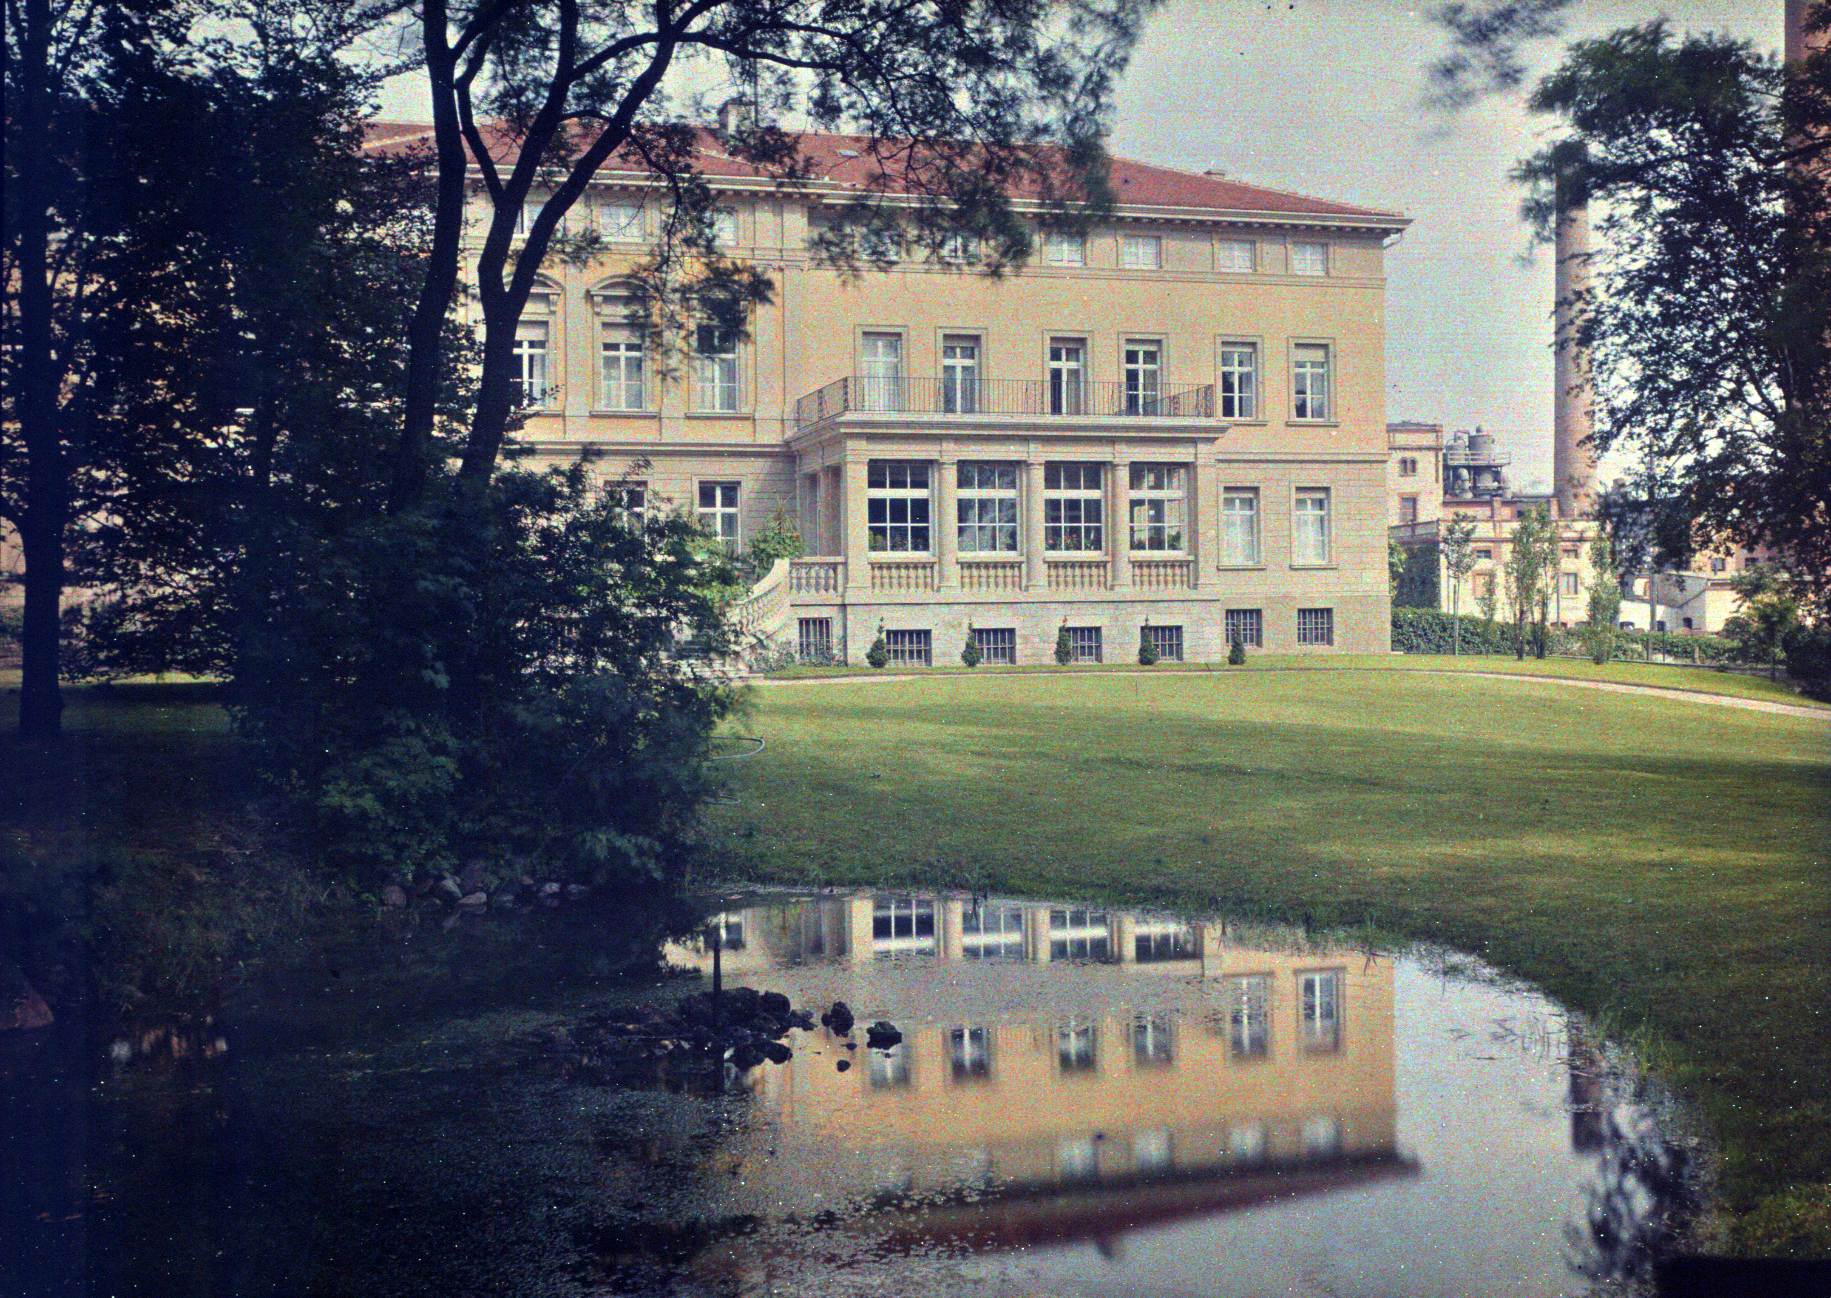 Villa Giesecke wybudowana w 1869 roku w Klein Wanzleben, w stylu klasycystycznym